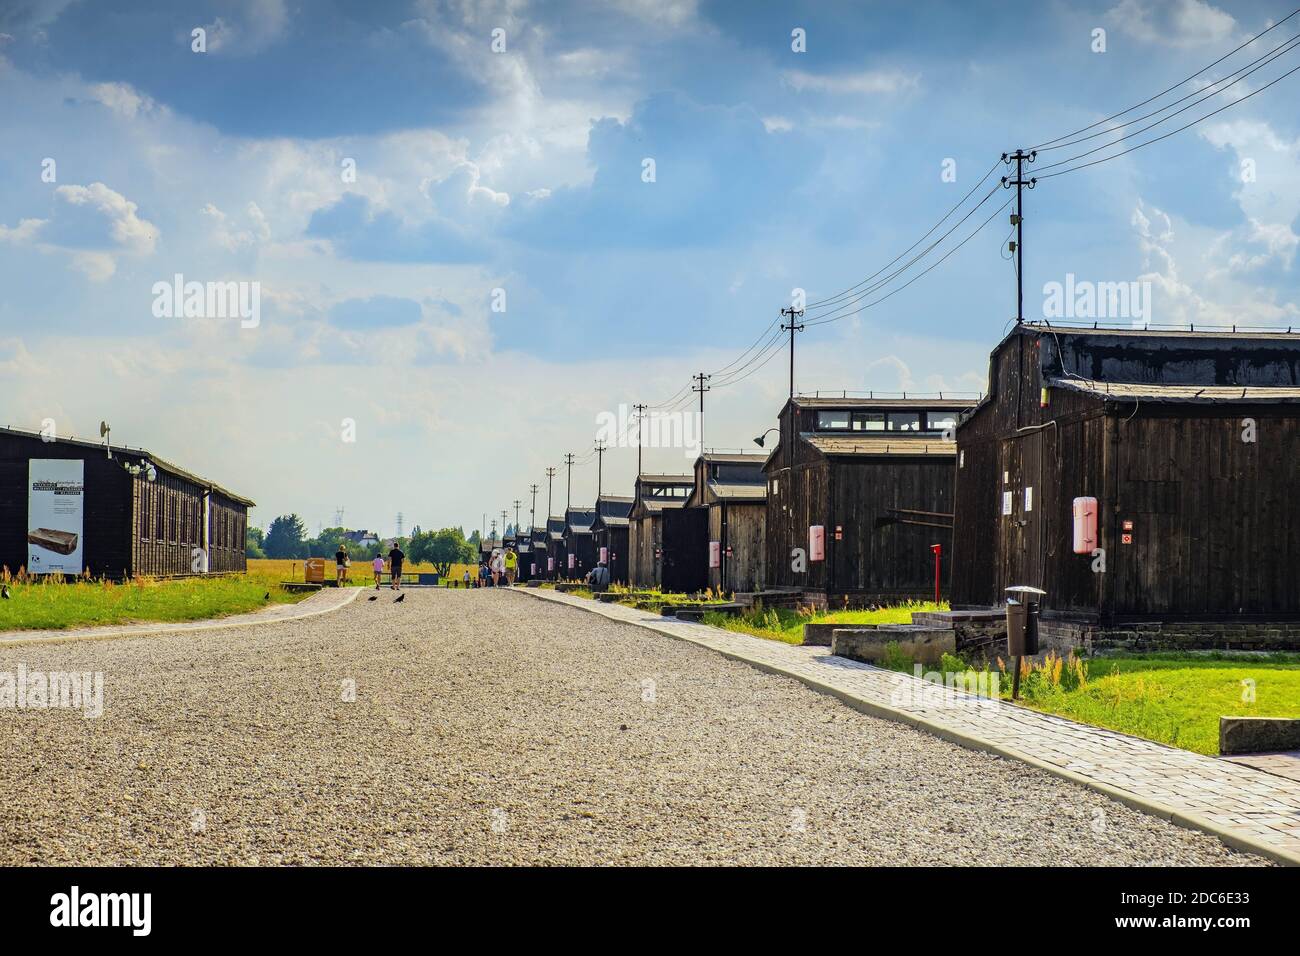 Lublin, Lubelskie / Polonia - 2019/08/17: Caserme e recinzioni del campo di concentramento e sterminio di Lublino Nazis - Konzentrationslage Foto Stock